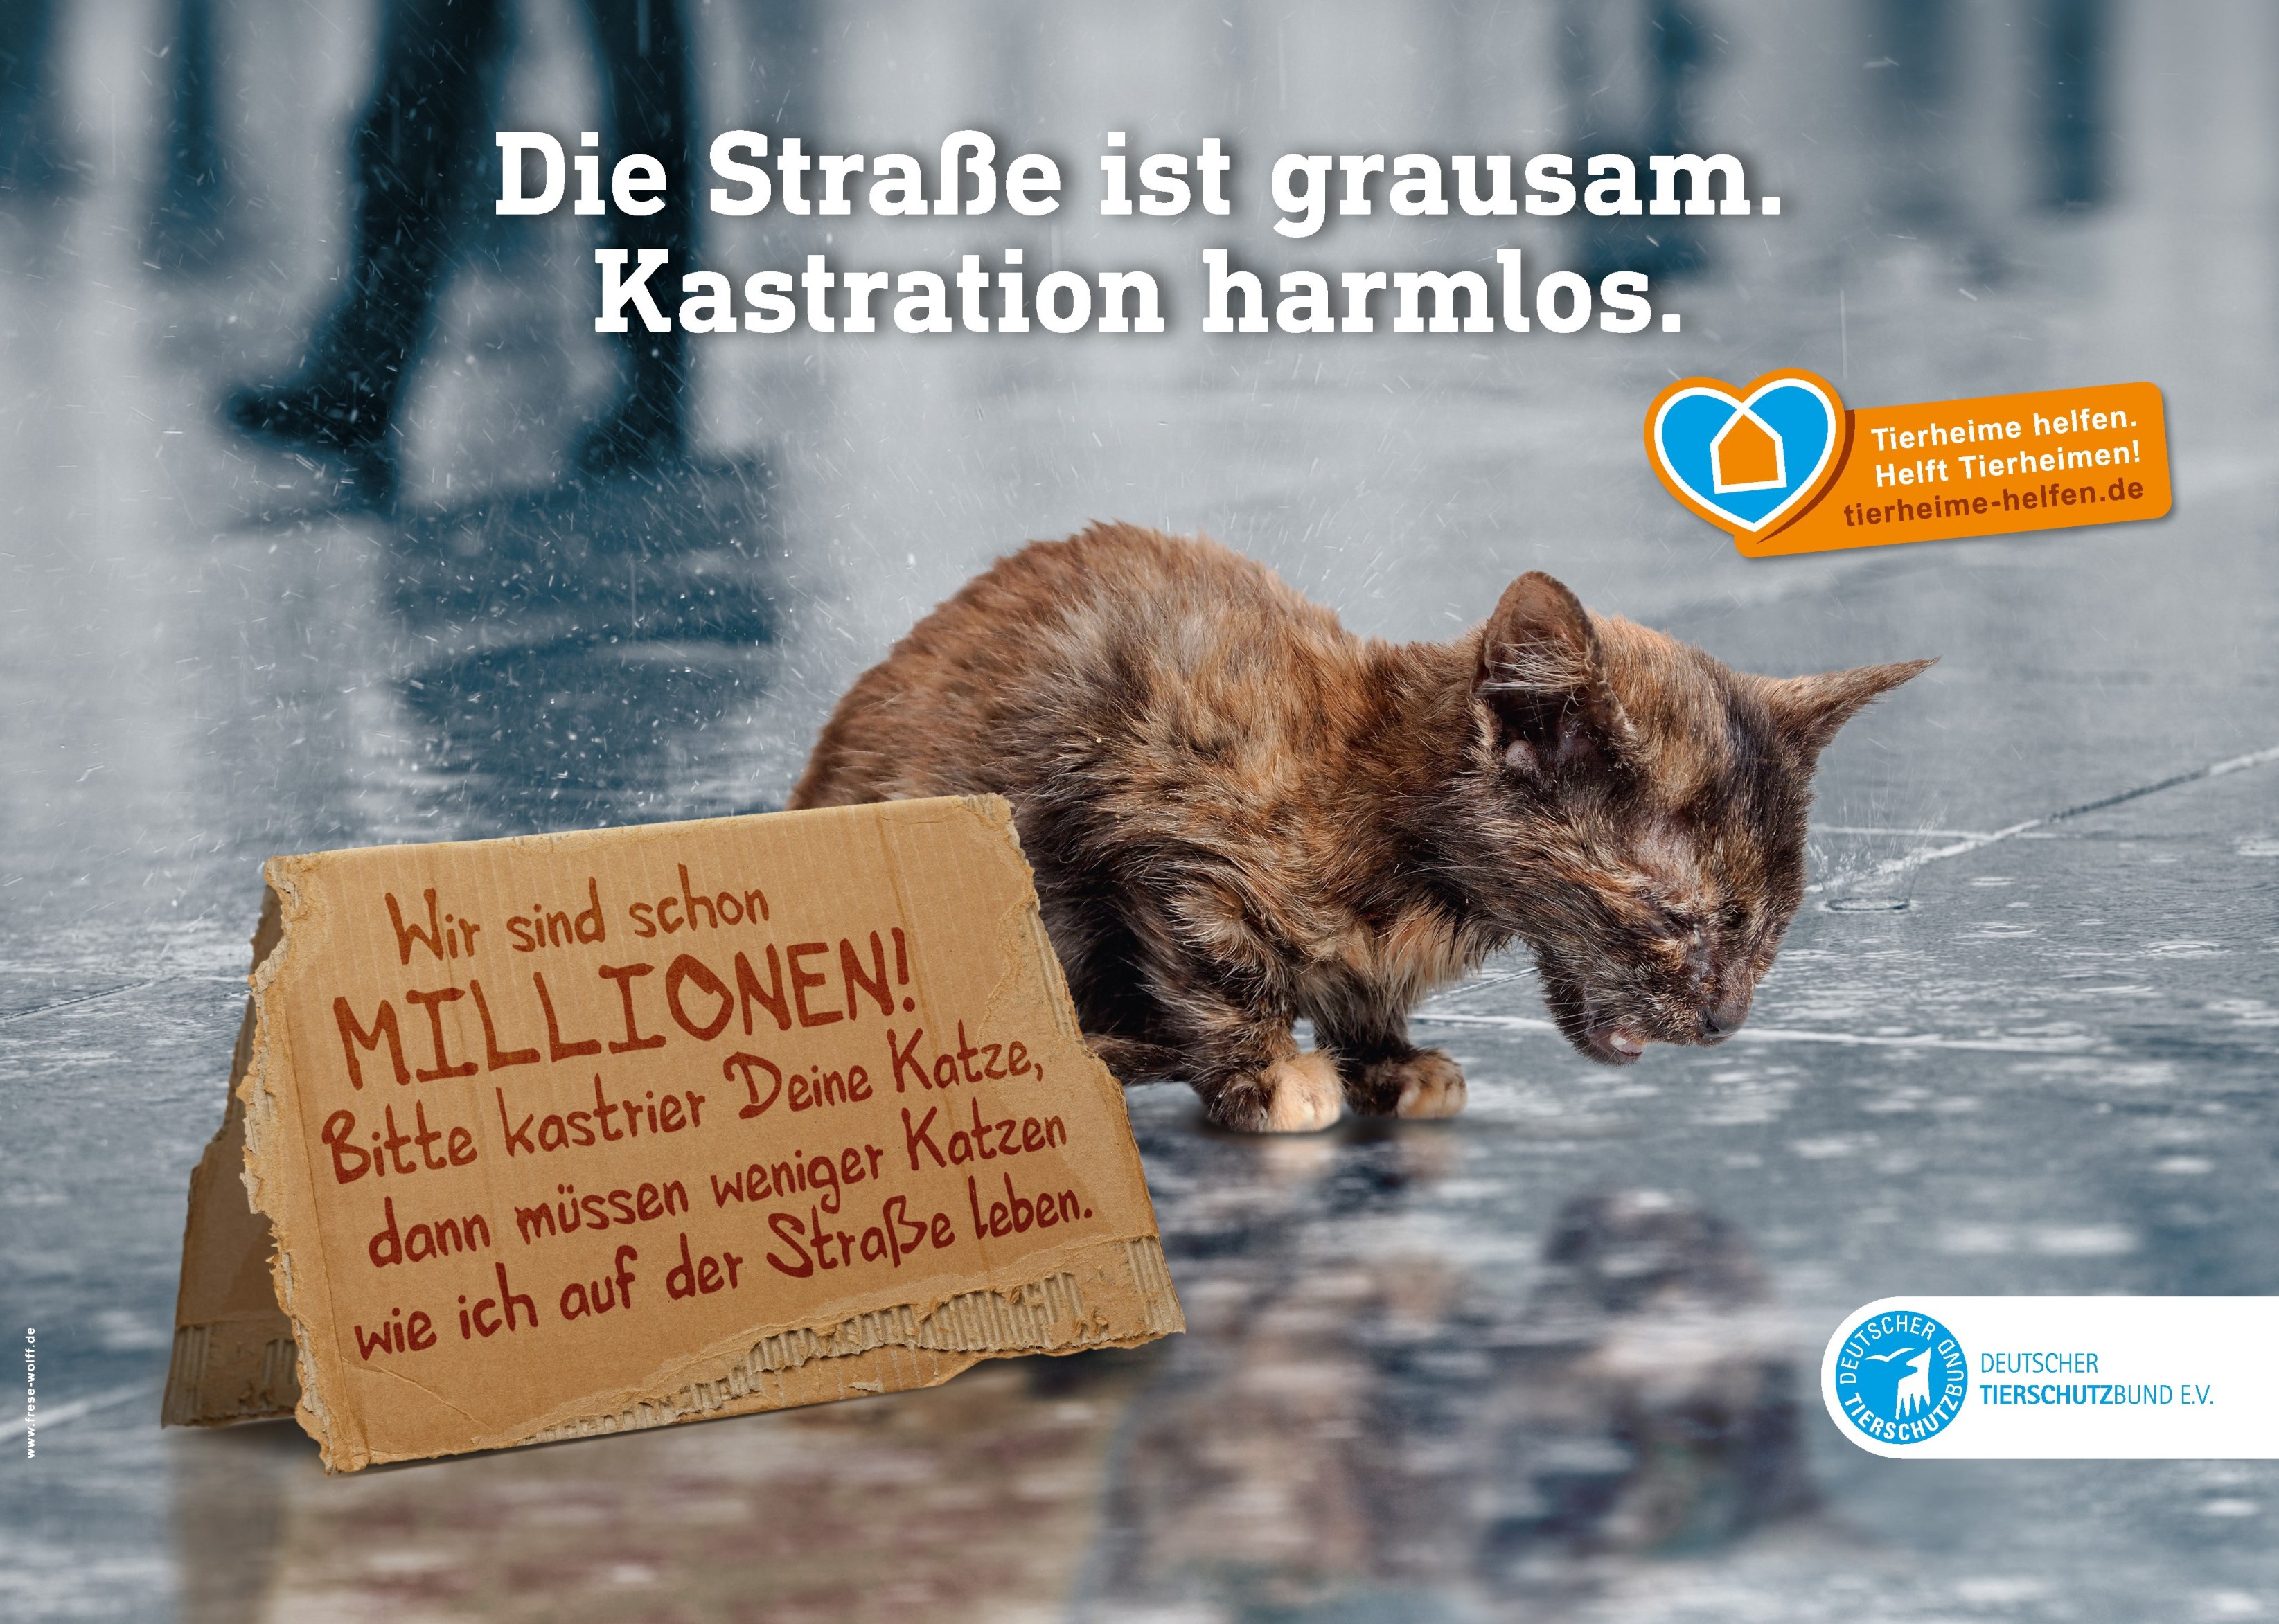 Der Deutsche Tierschutzbund macht mit einer neuen Kampagne auf das Leid der Straßenkatzen in Deutschland aufmerksam.